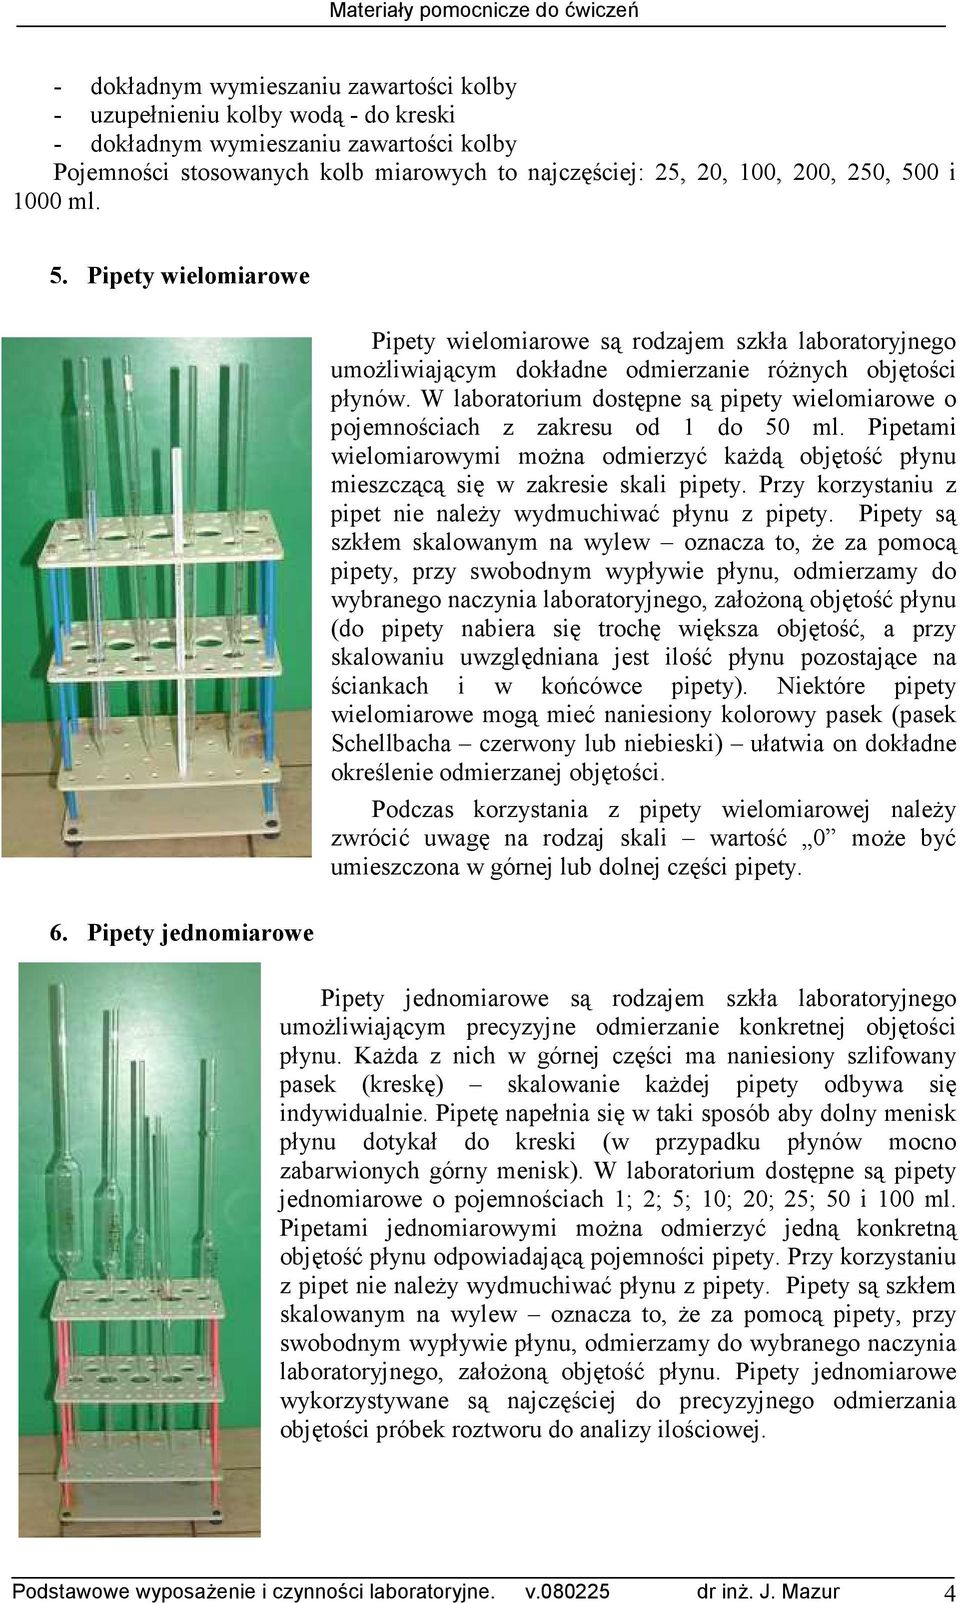 W laboratorium dostępne są pipety wielomiarowe o pojemnościach z zakresu od 1 do 50 ml. Pipetami wielomiarowymi moŝna odmierzyć kaŝdą objętość płynu mieszczącą się w zakresie skali pipety.